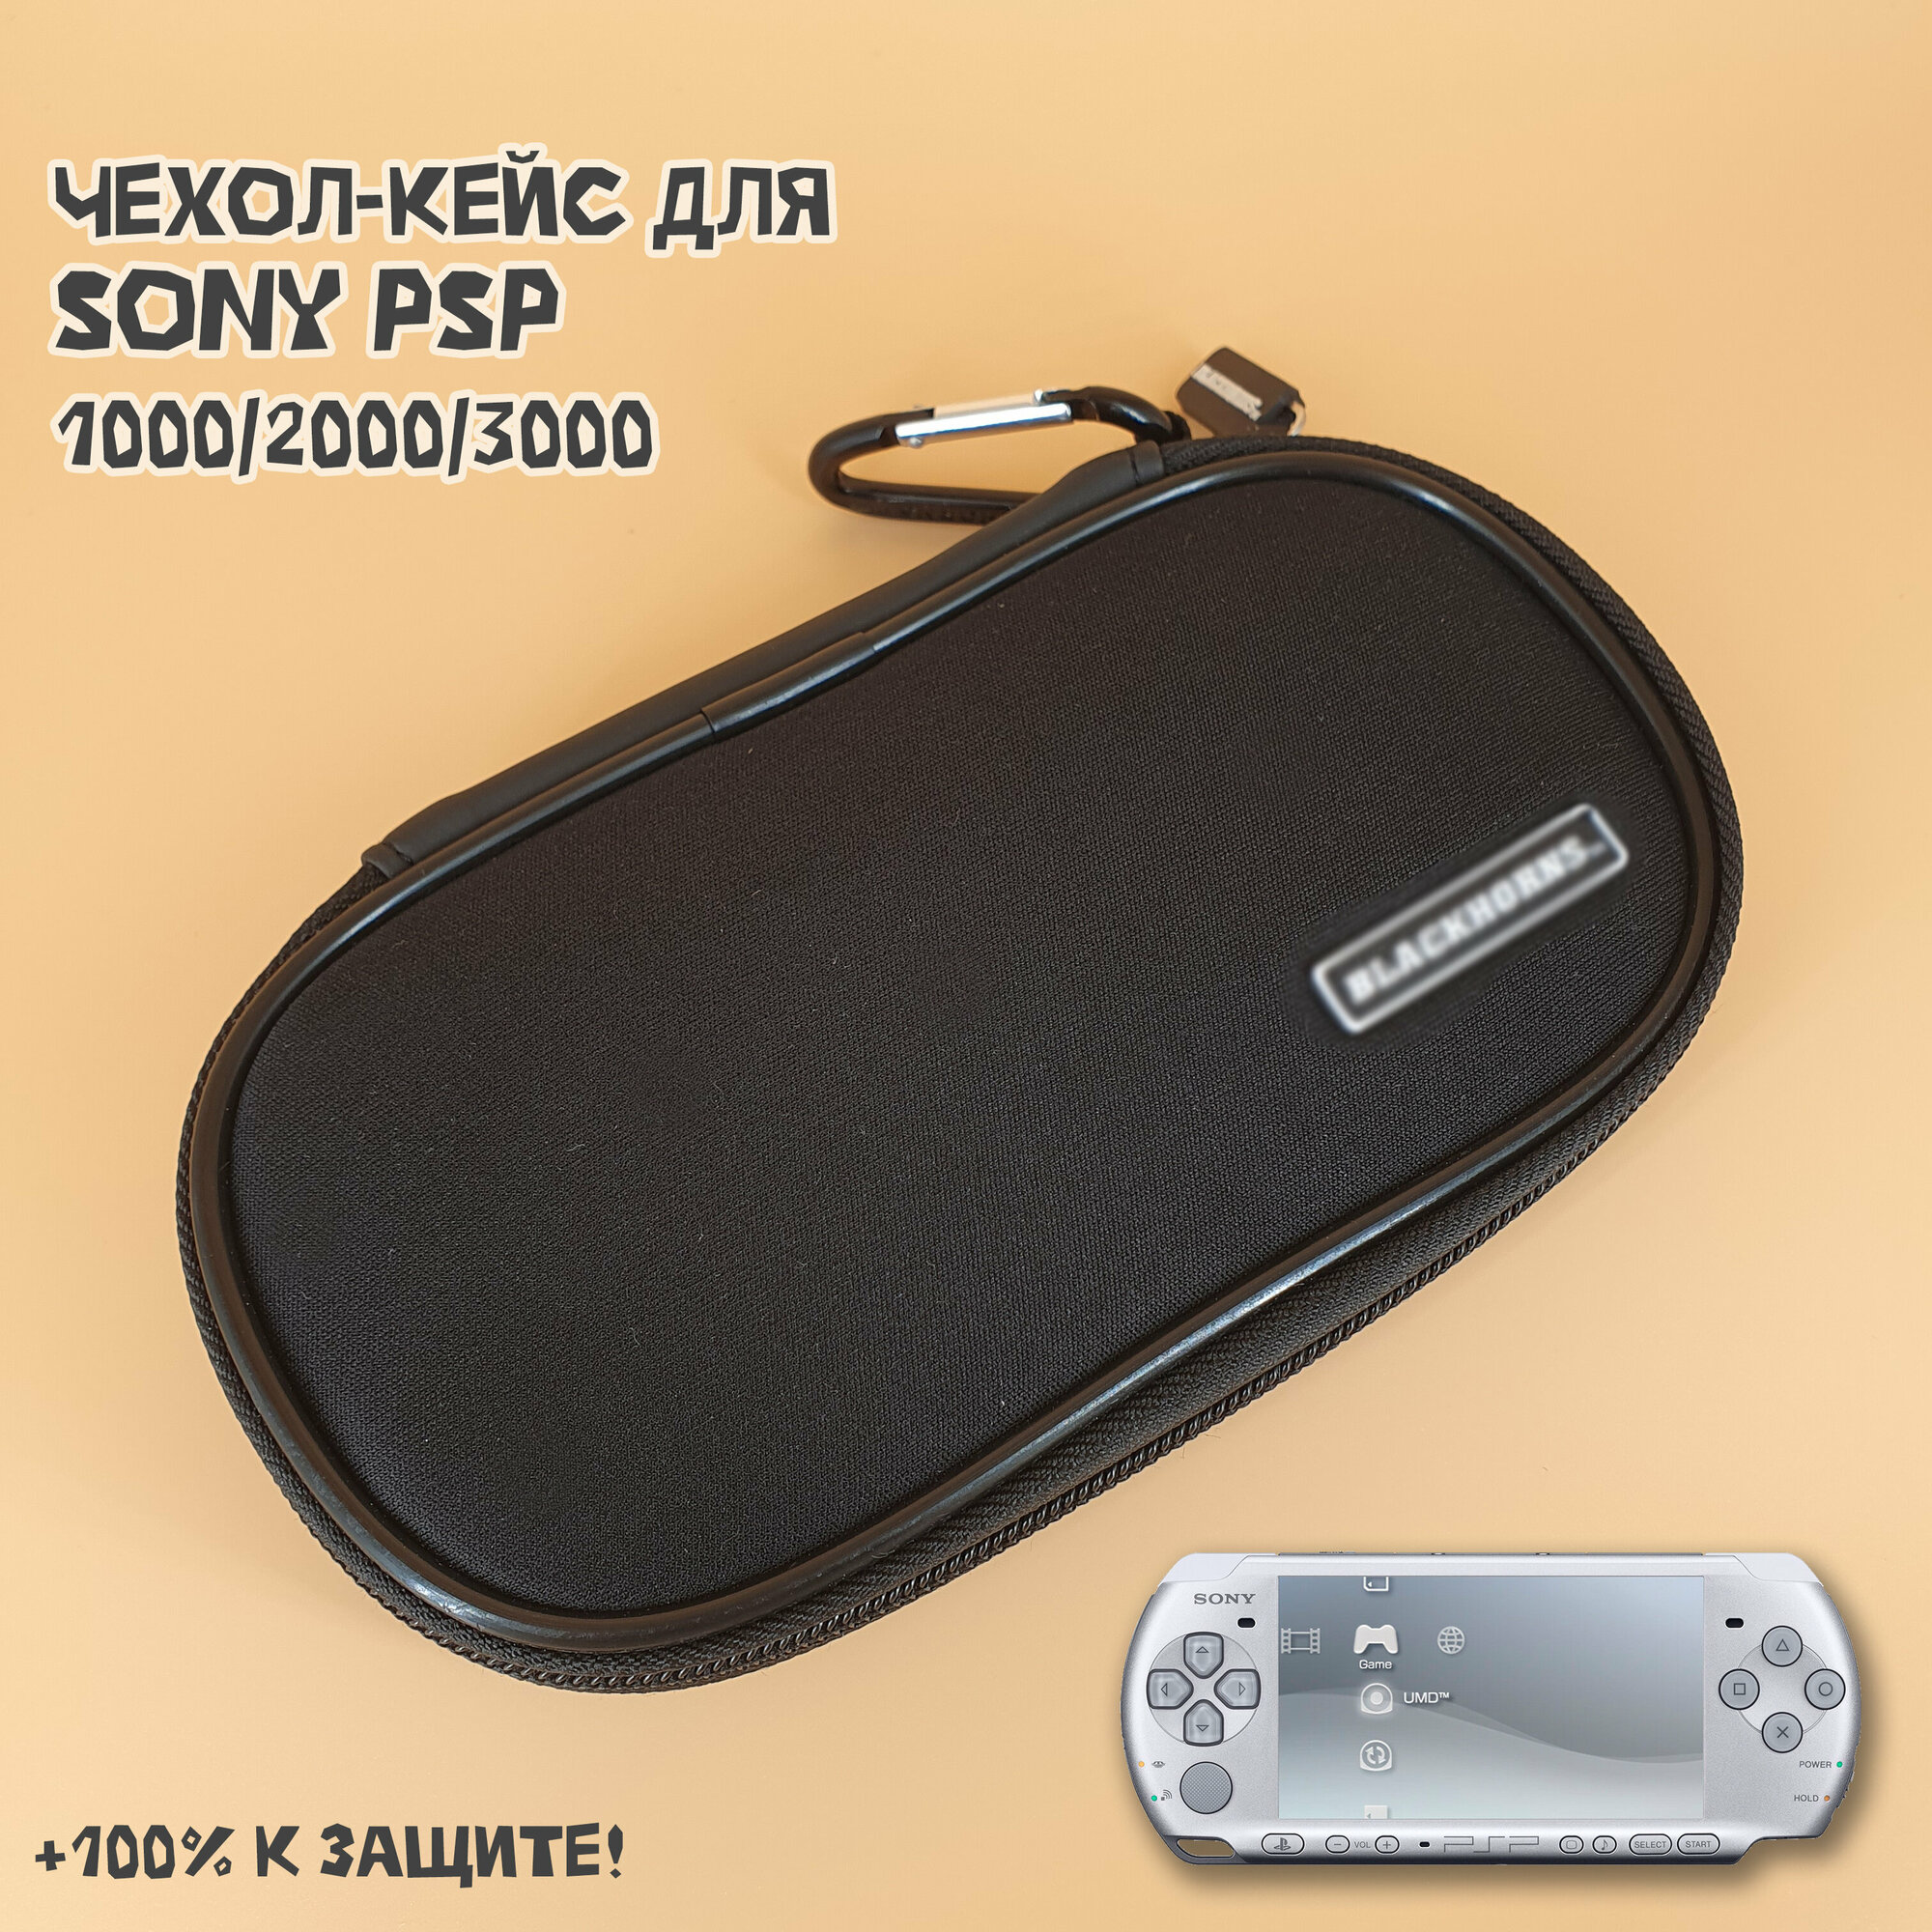 Чехол защитный для Sony PSP 1000/2000/3000, кейс для консоли и аксессуаров, на молнии, черный